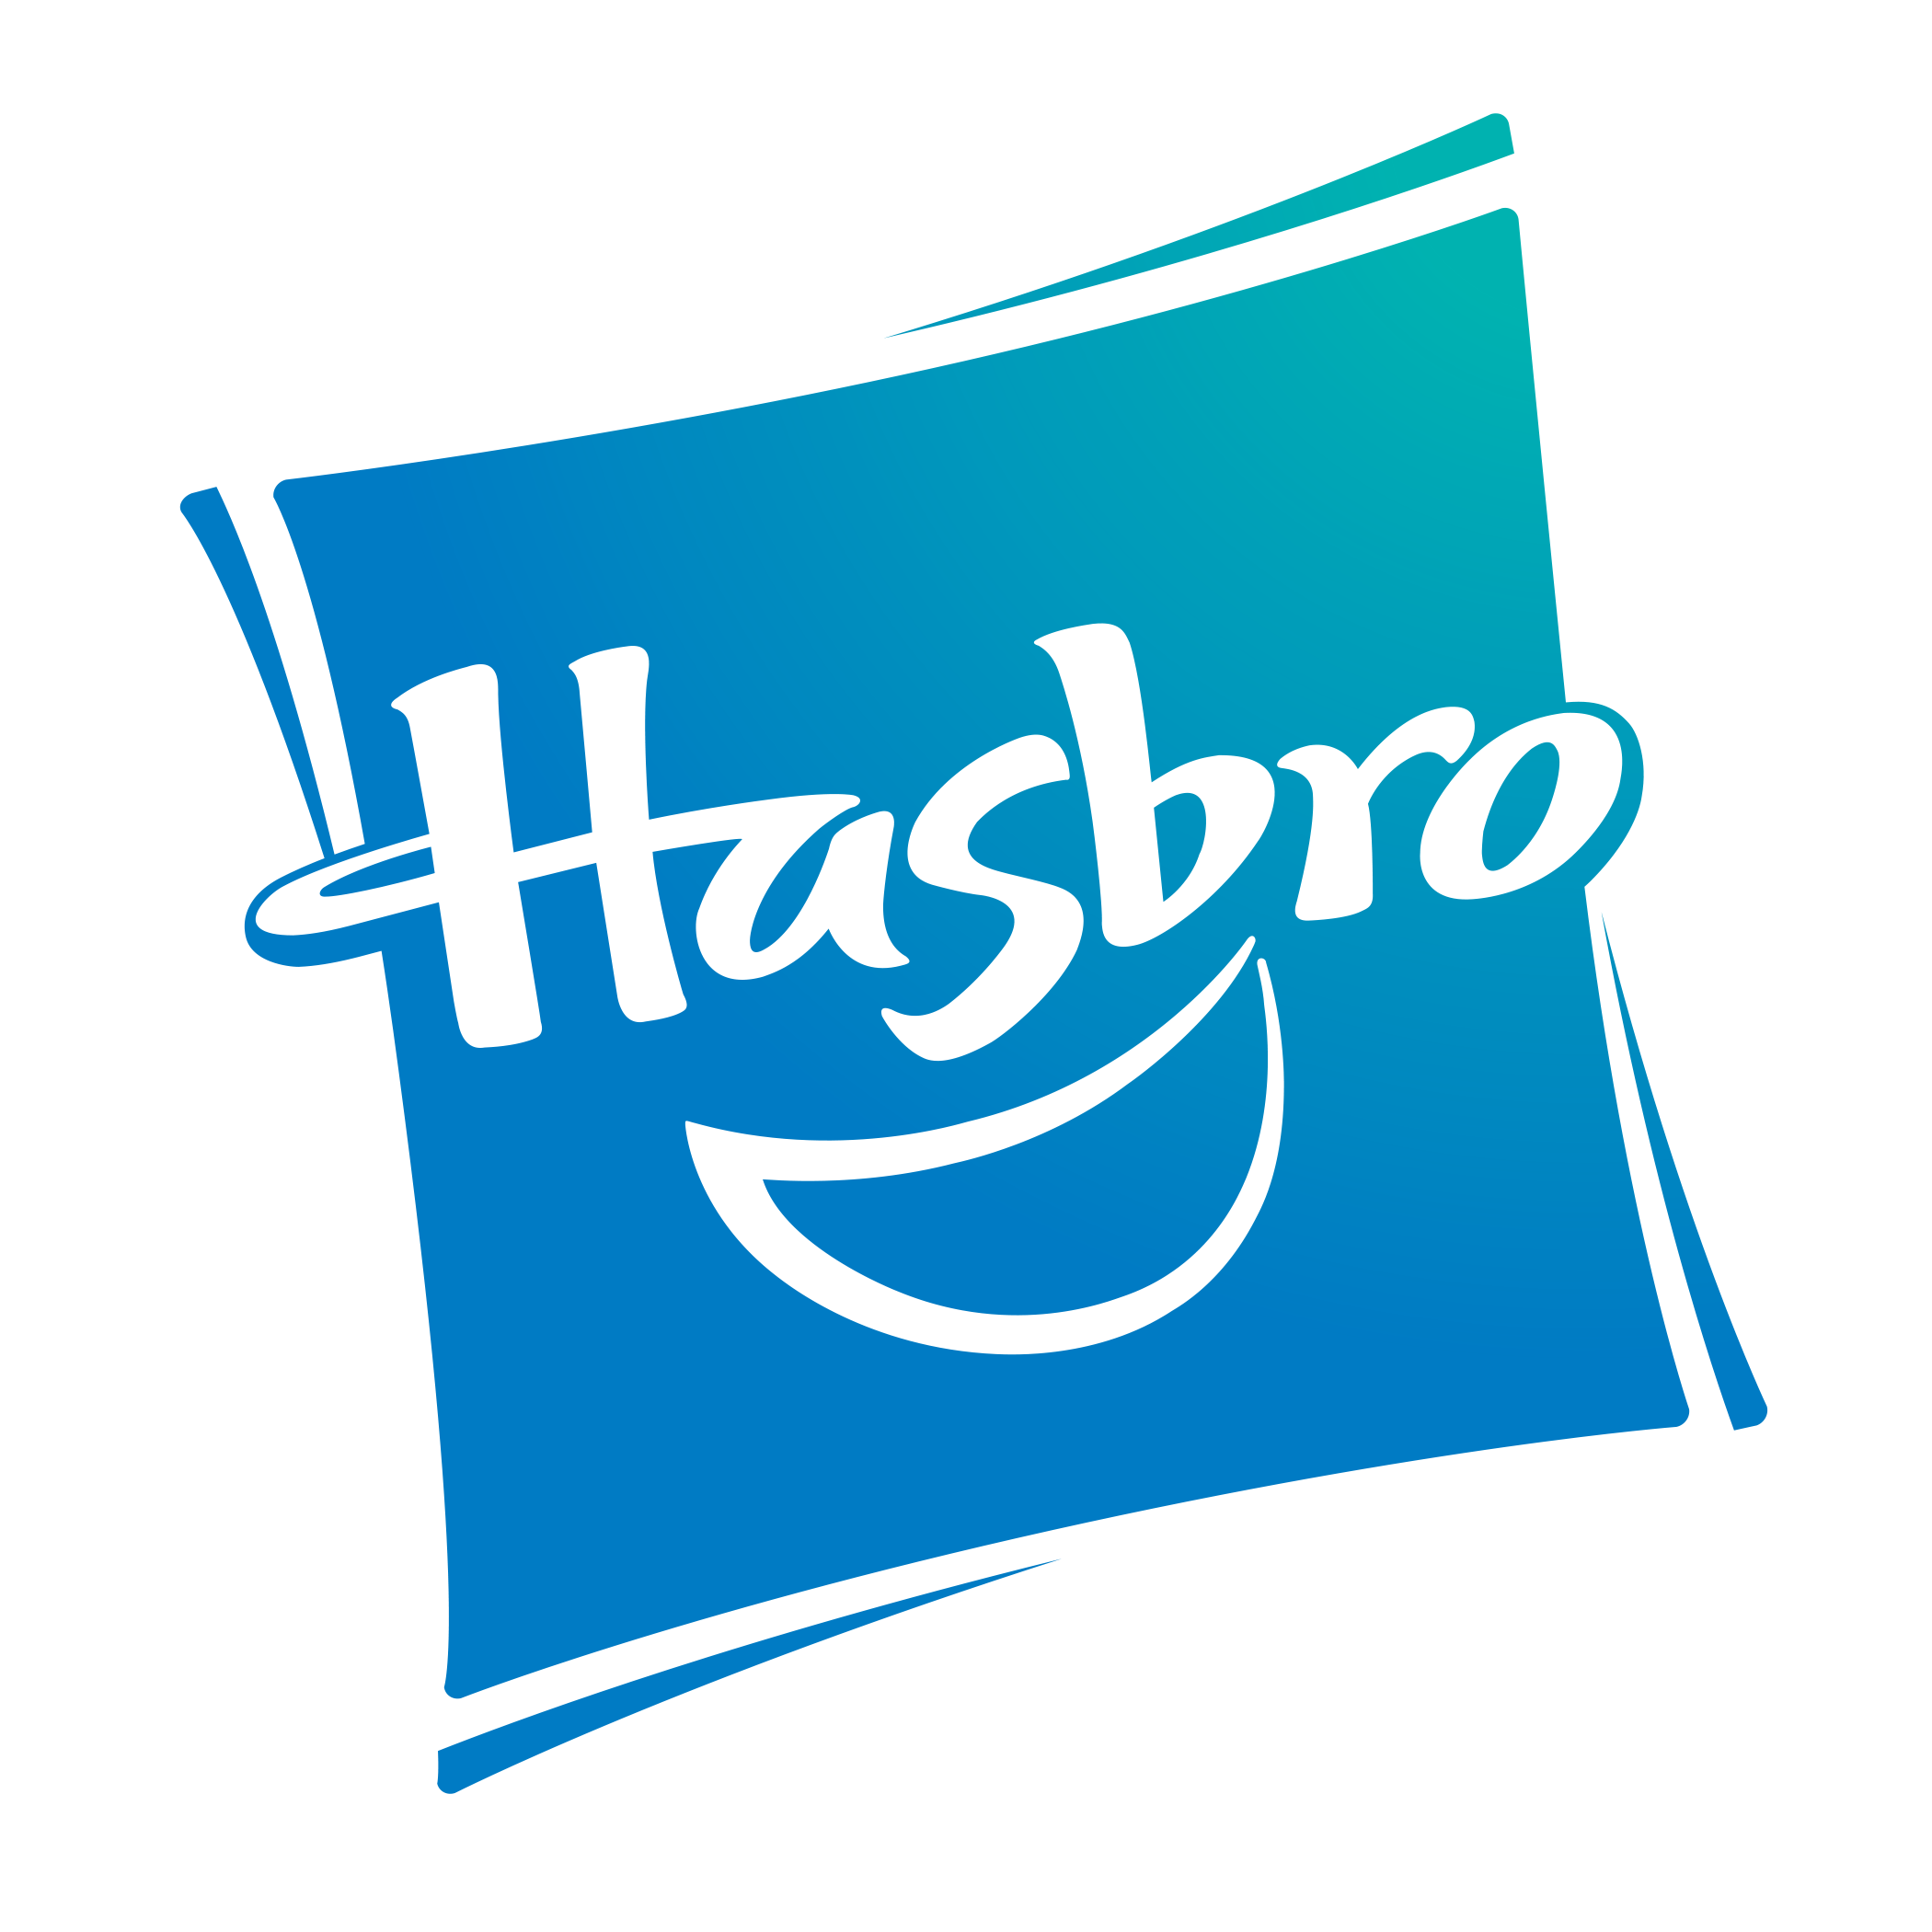 Hasbro_4c_noR